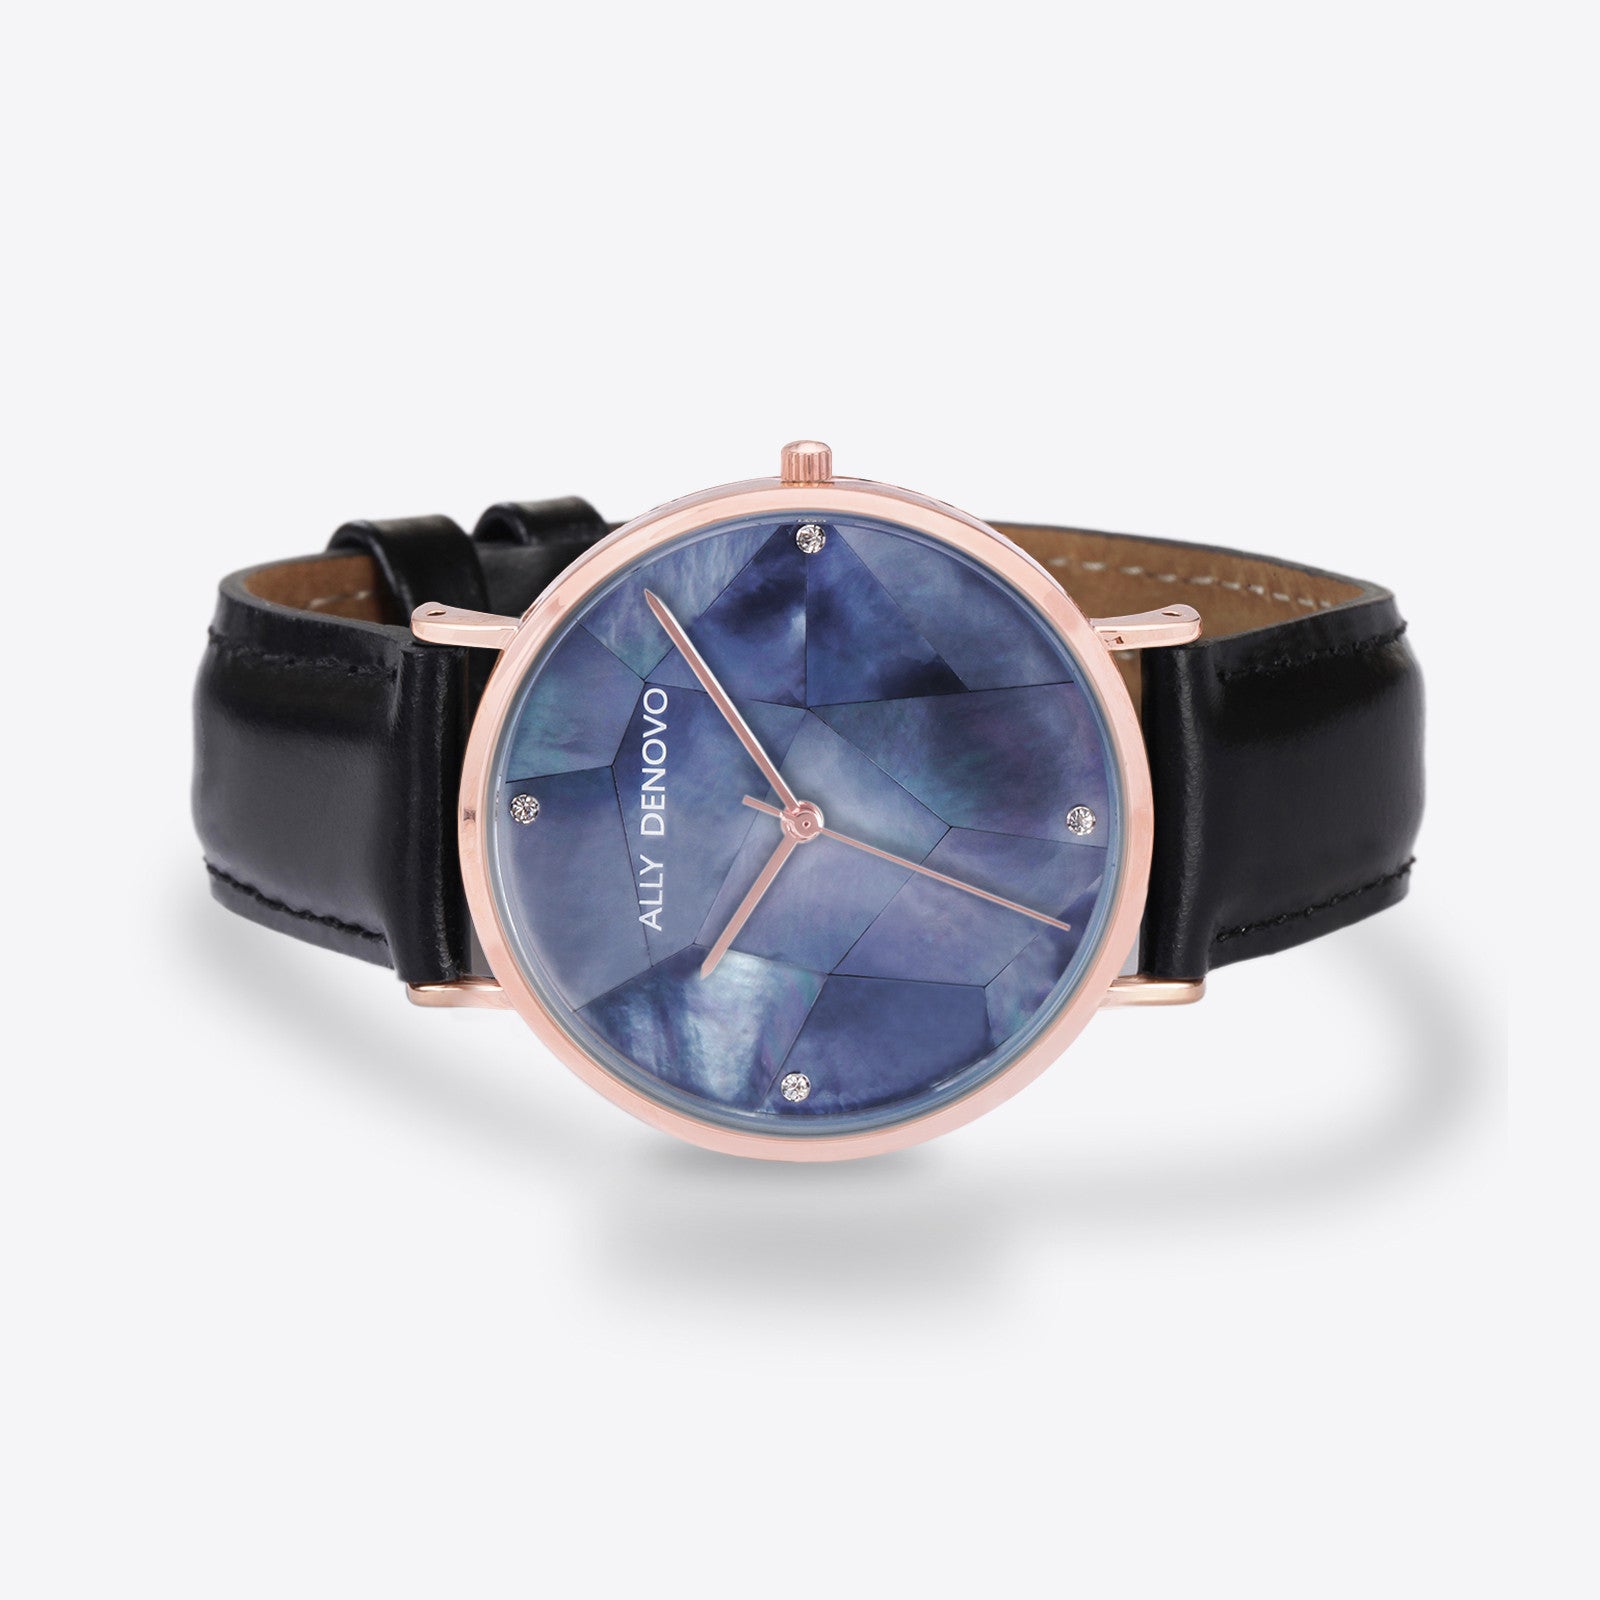 Gaia pearl皮革腕錶-藍色菱形琉璃玫瑰金框黑色真皮錶帶 AF5003.7